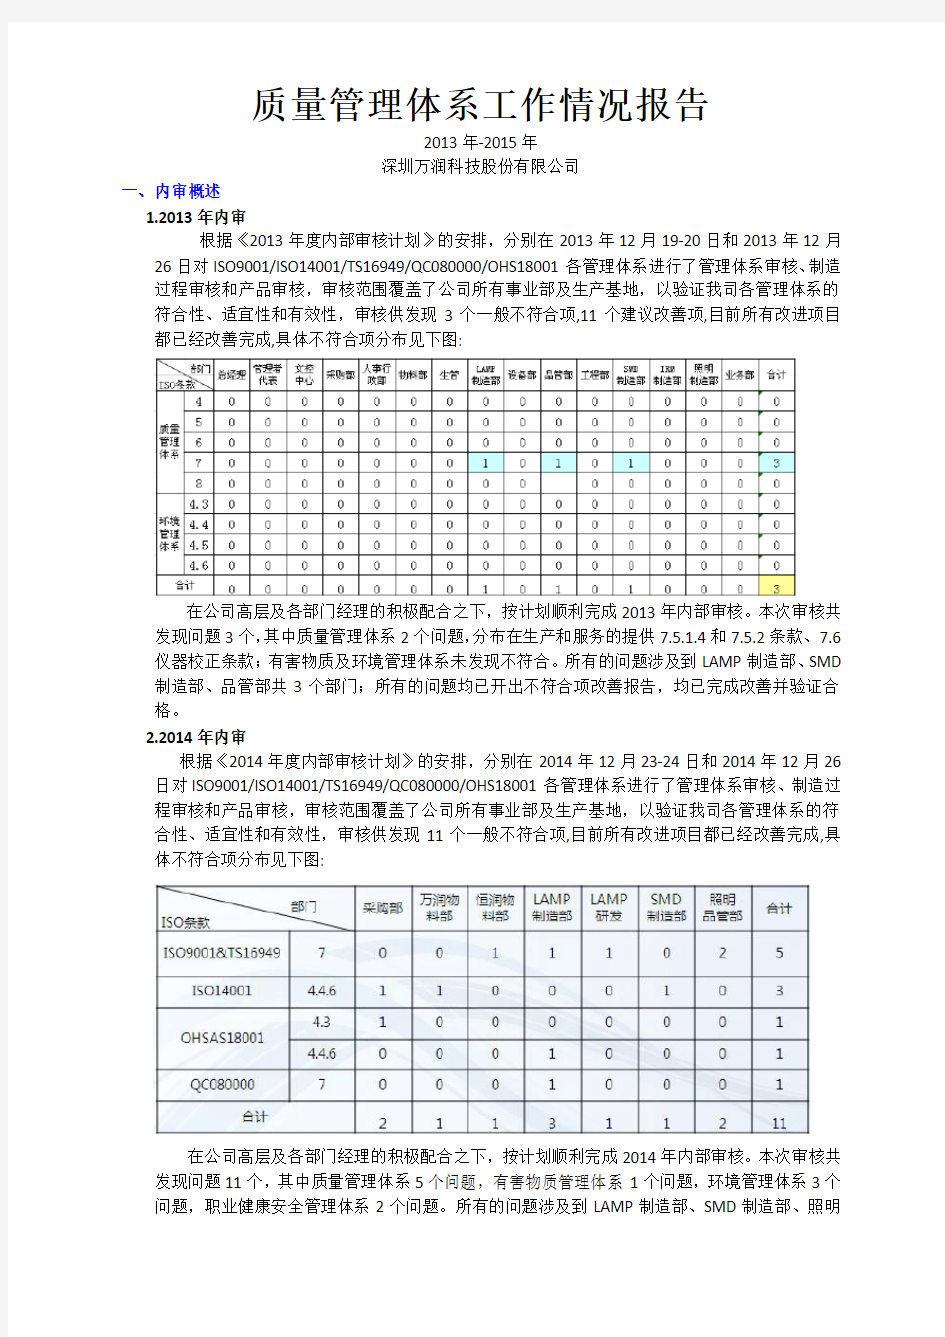 质量管理体系工作情况报告(1)